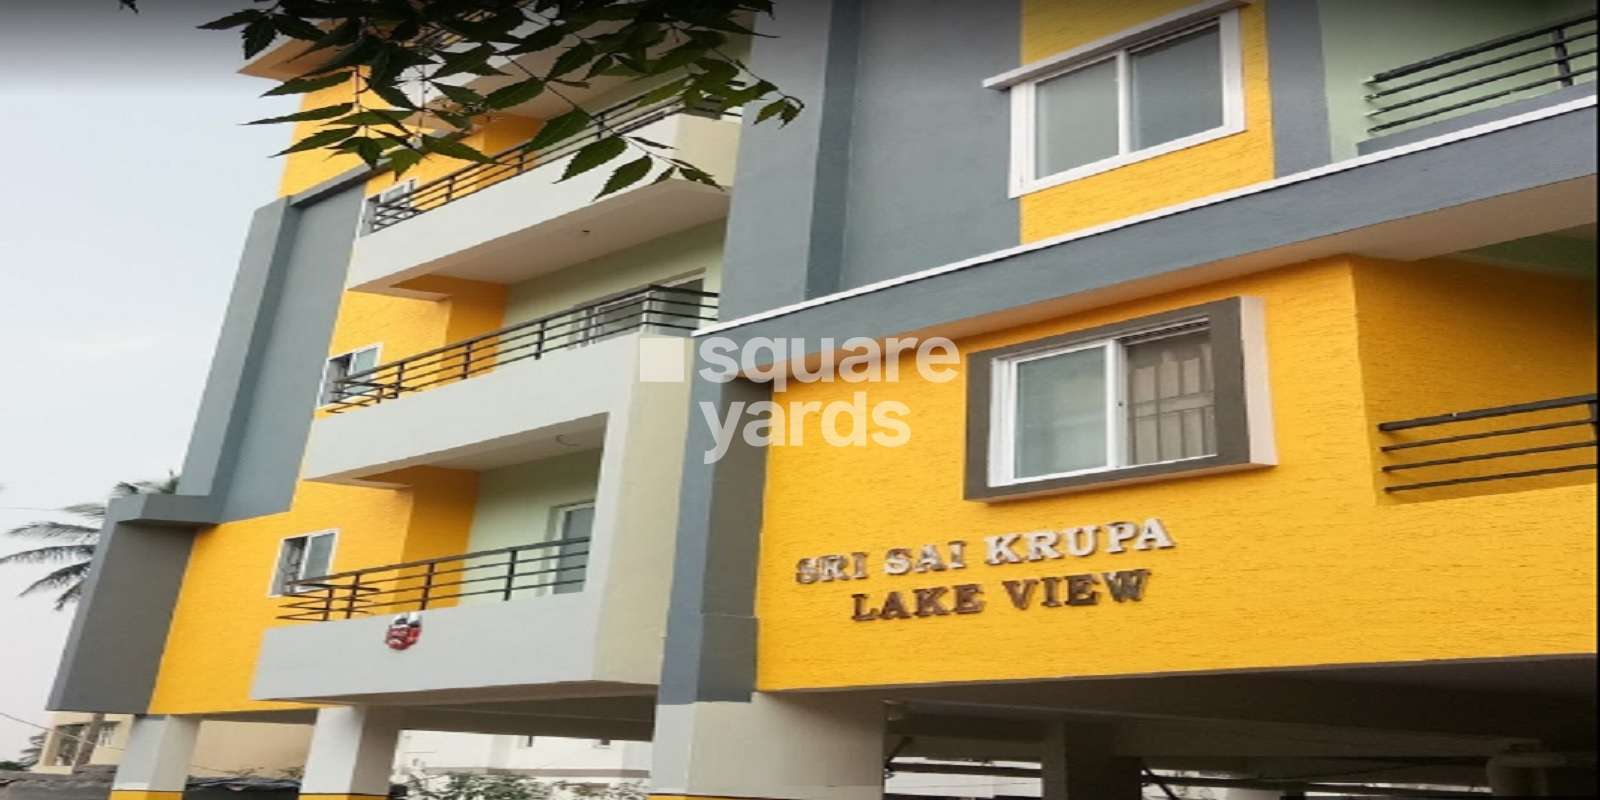 Sri Sai Krupa Lakeview Apartment Cover Image